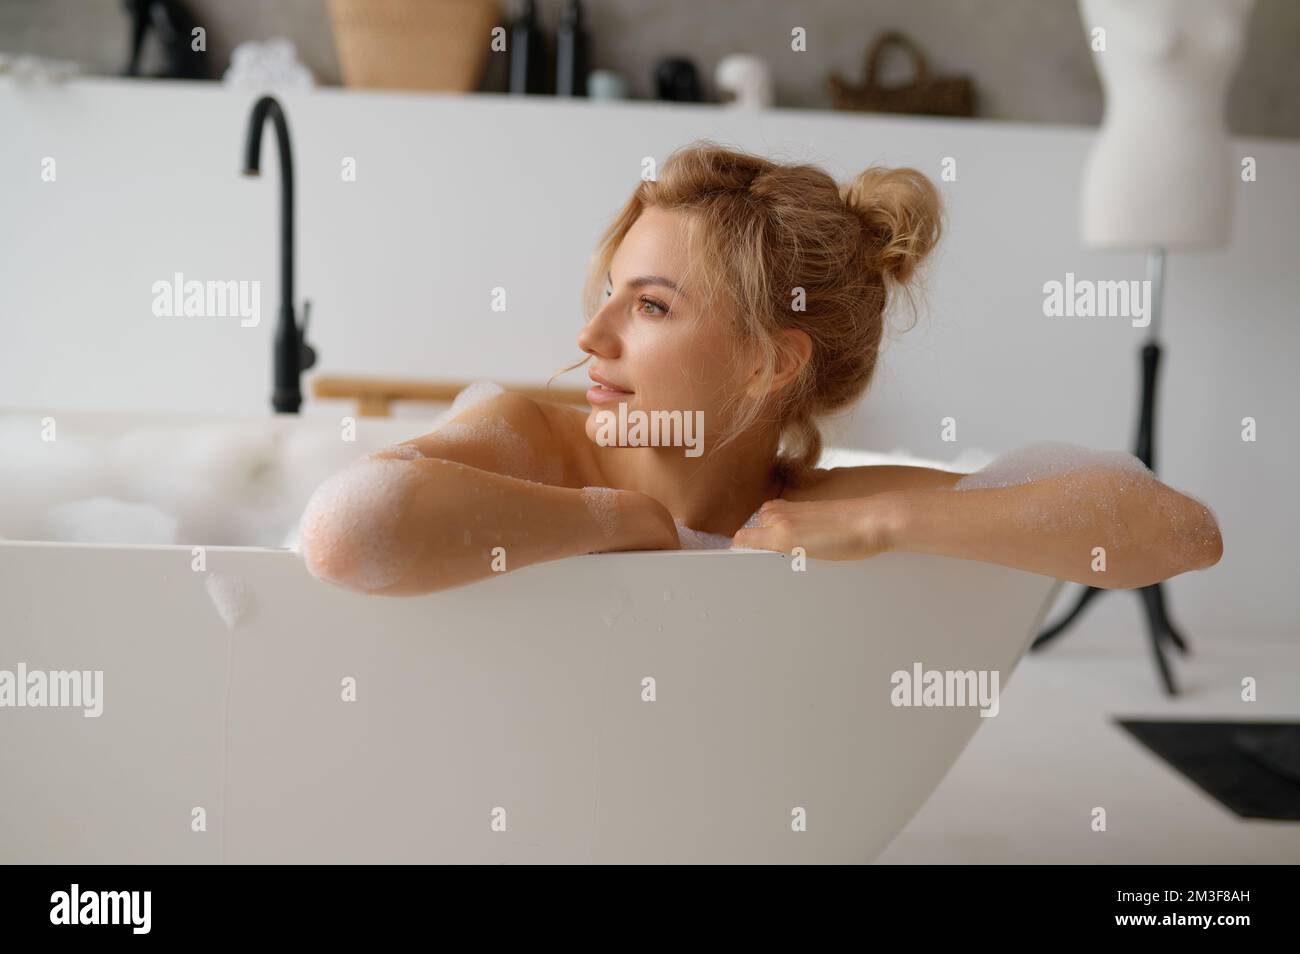 Ritratto di giovane donna penitente che prende il bagno e guarda via Foto Stock